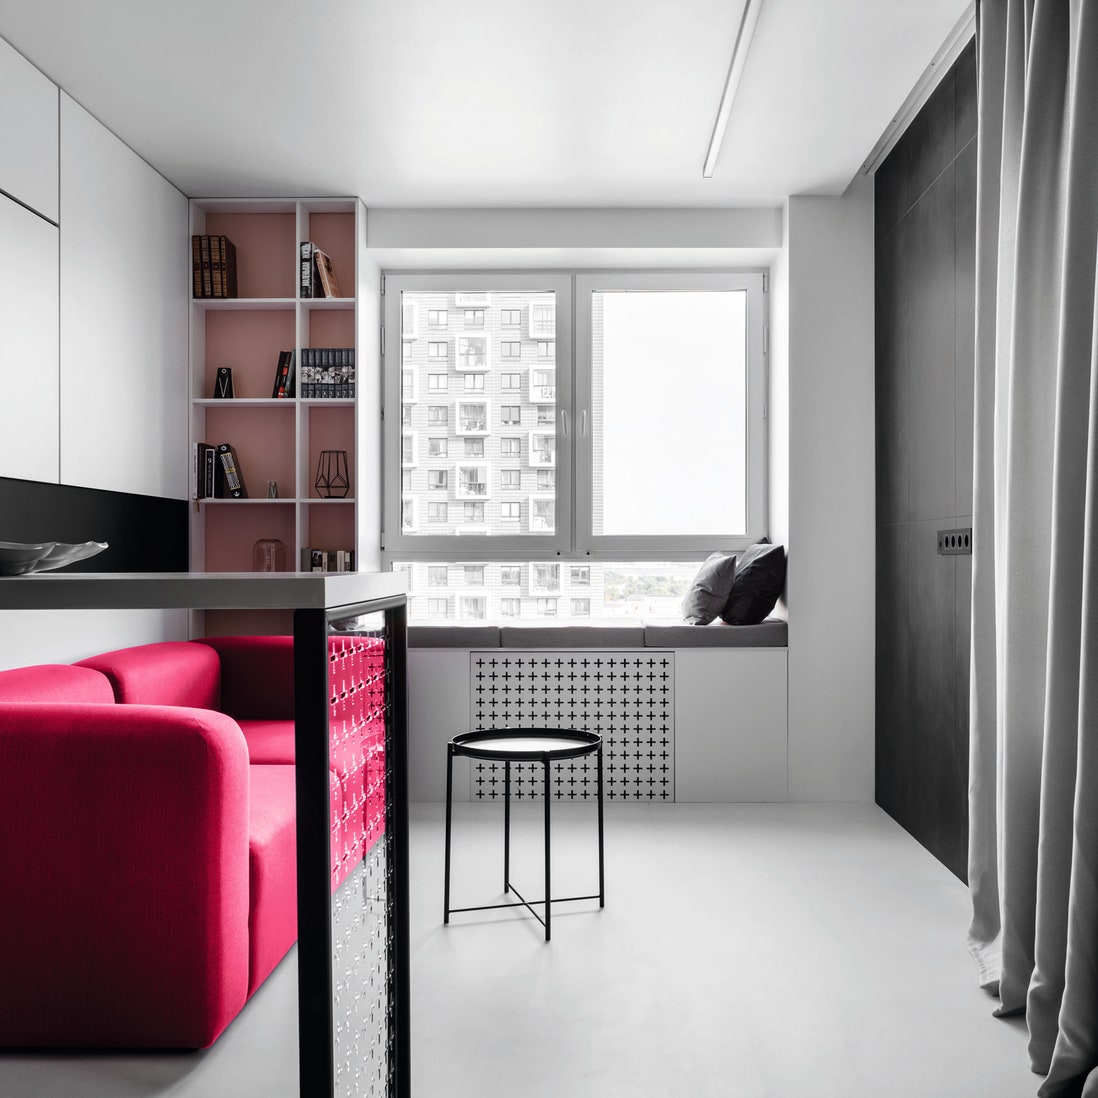 Графичная квартира с яркими вставками цвета 52 м². Гостиная. Диван Delo Design журнальный стол IKEA барные стулья...